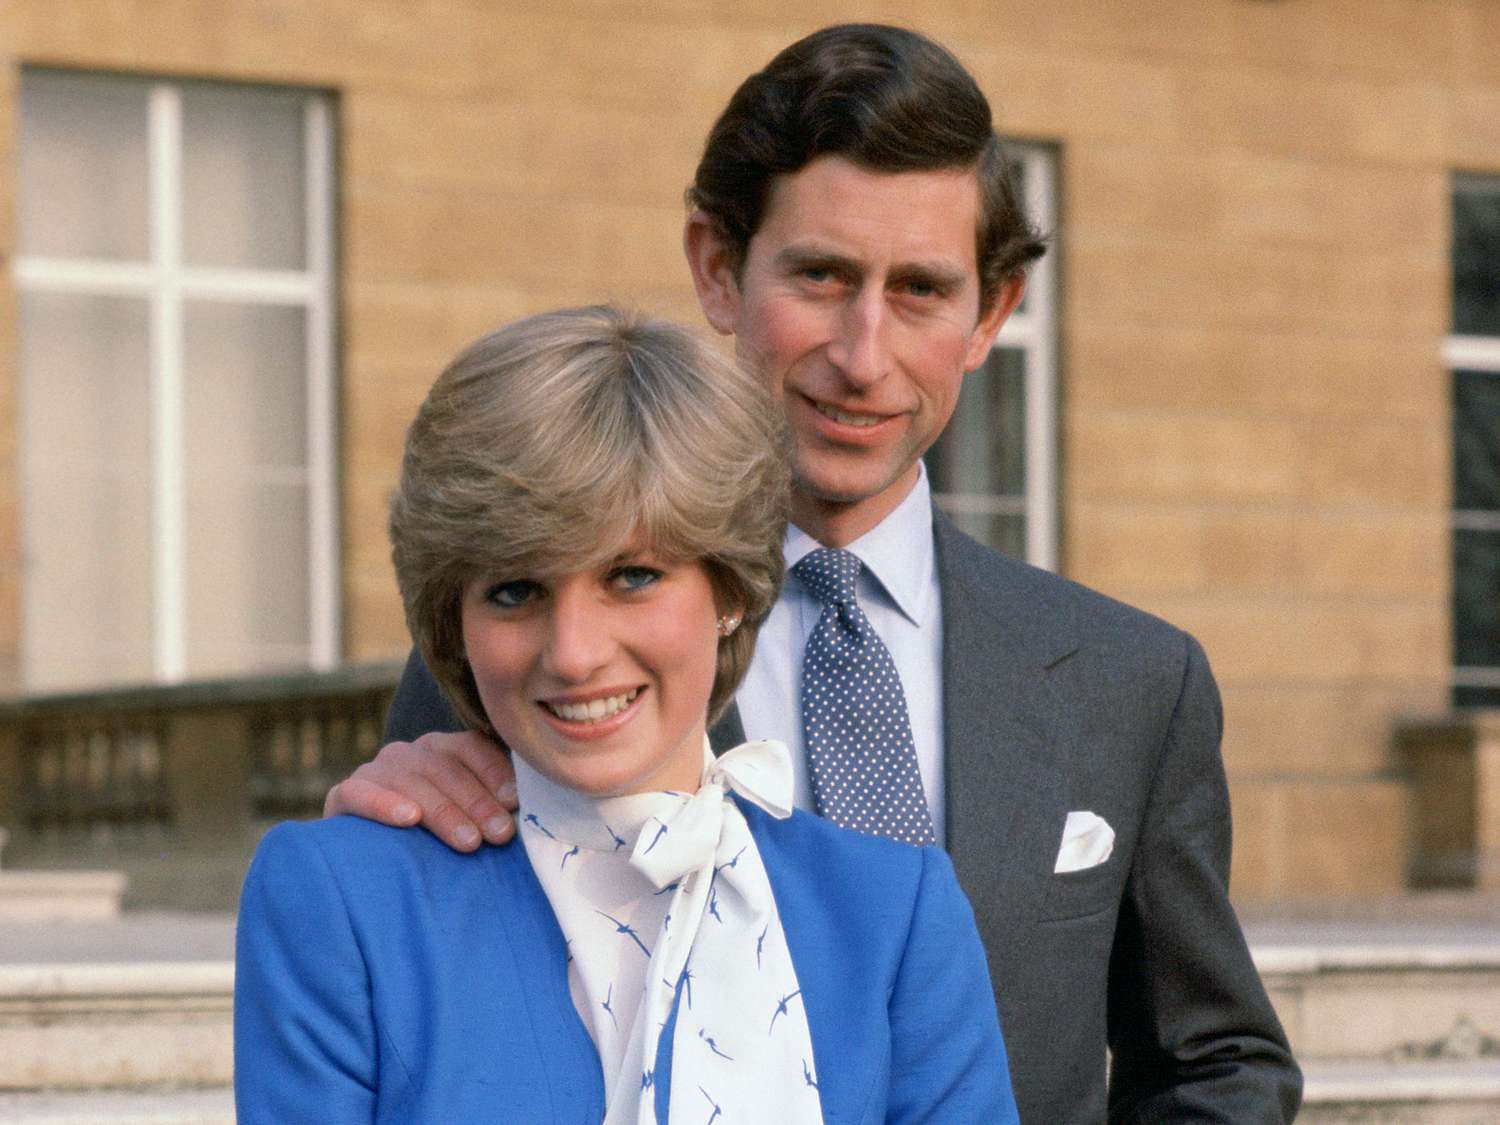 Detaliile neobișnuite observate de fani în fotografiile vechi ale prințesei Diana cu Regele Charles: „Au făcut tot posibilul să păstreze aparențele”/ People